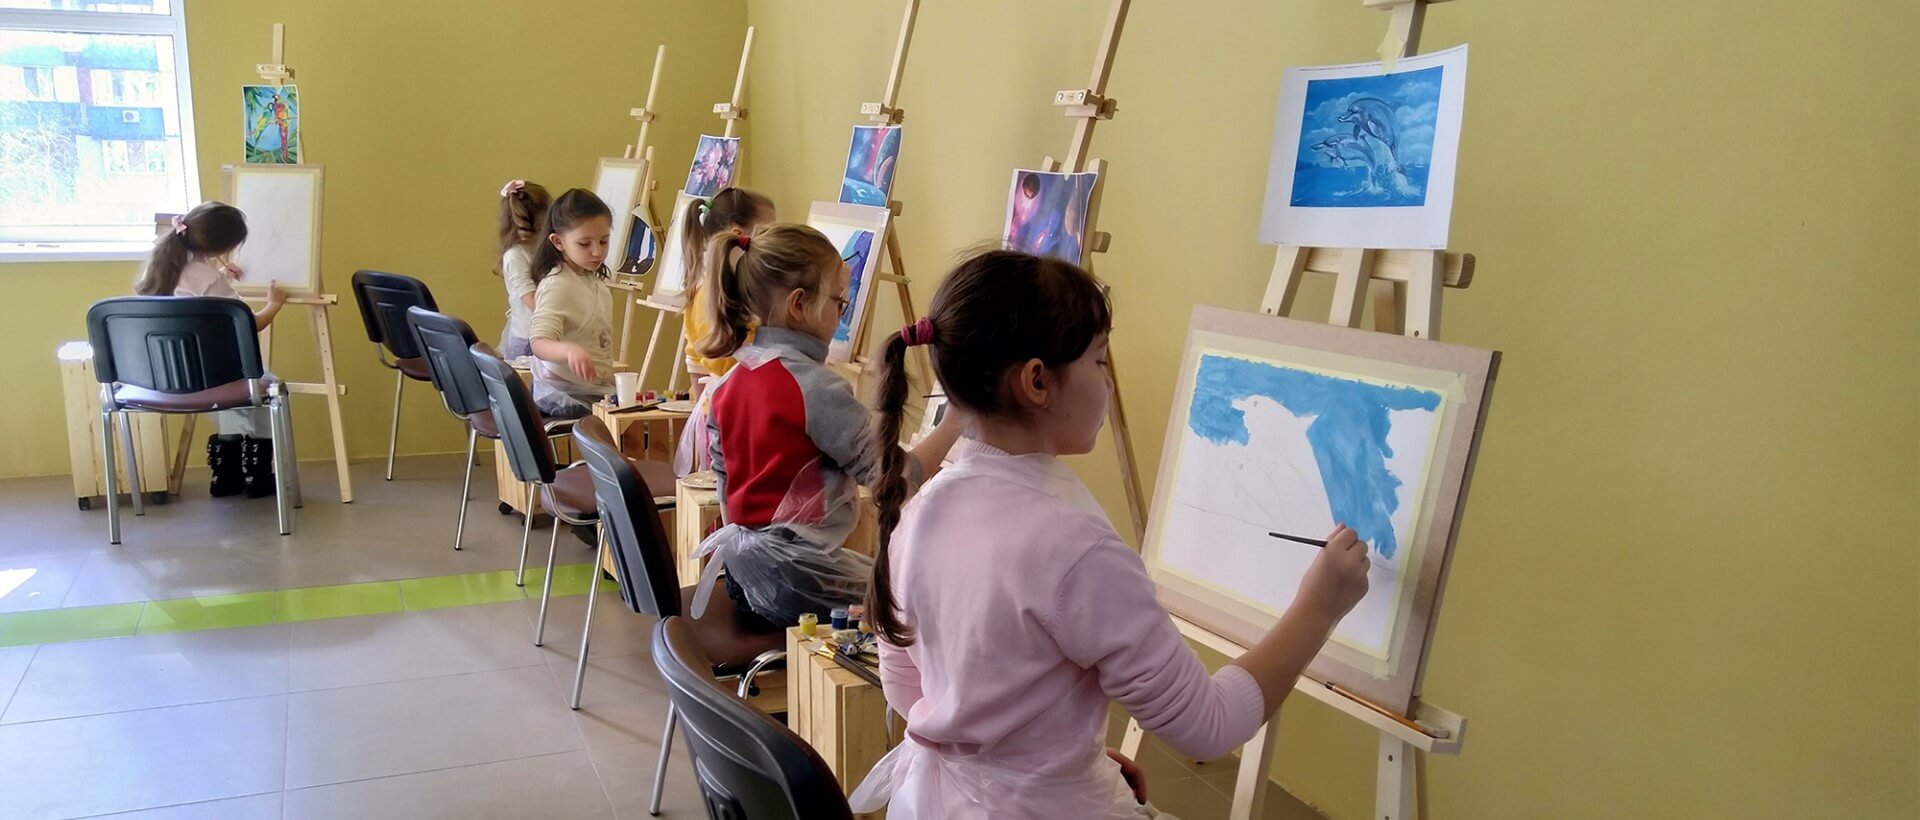 Курс рисования для детей 4 занятия, Киев - Фото